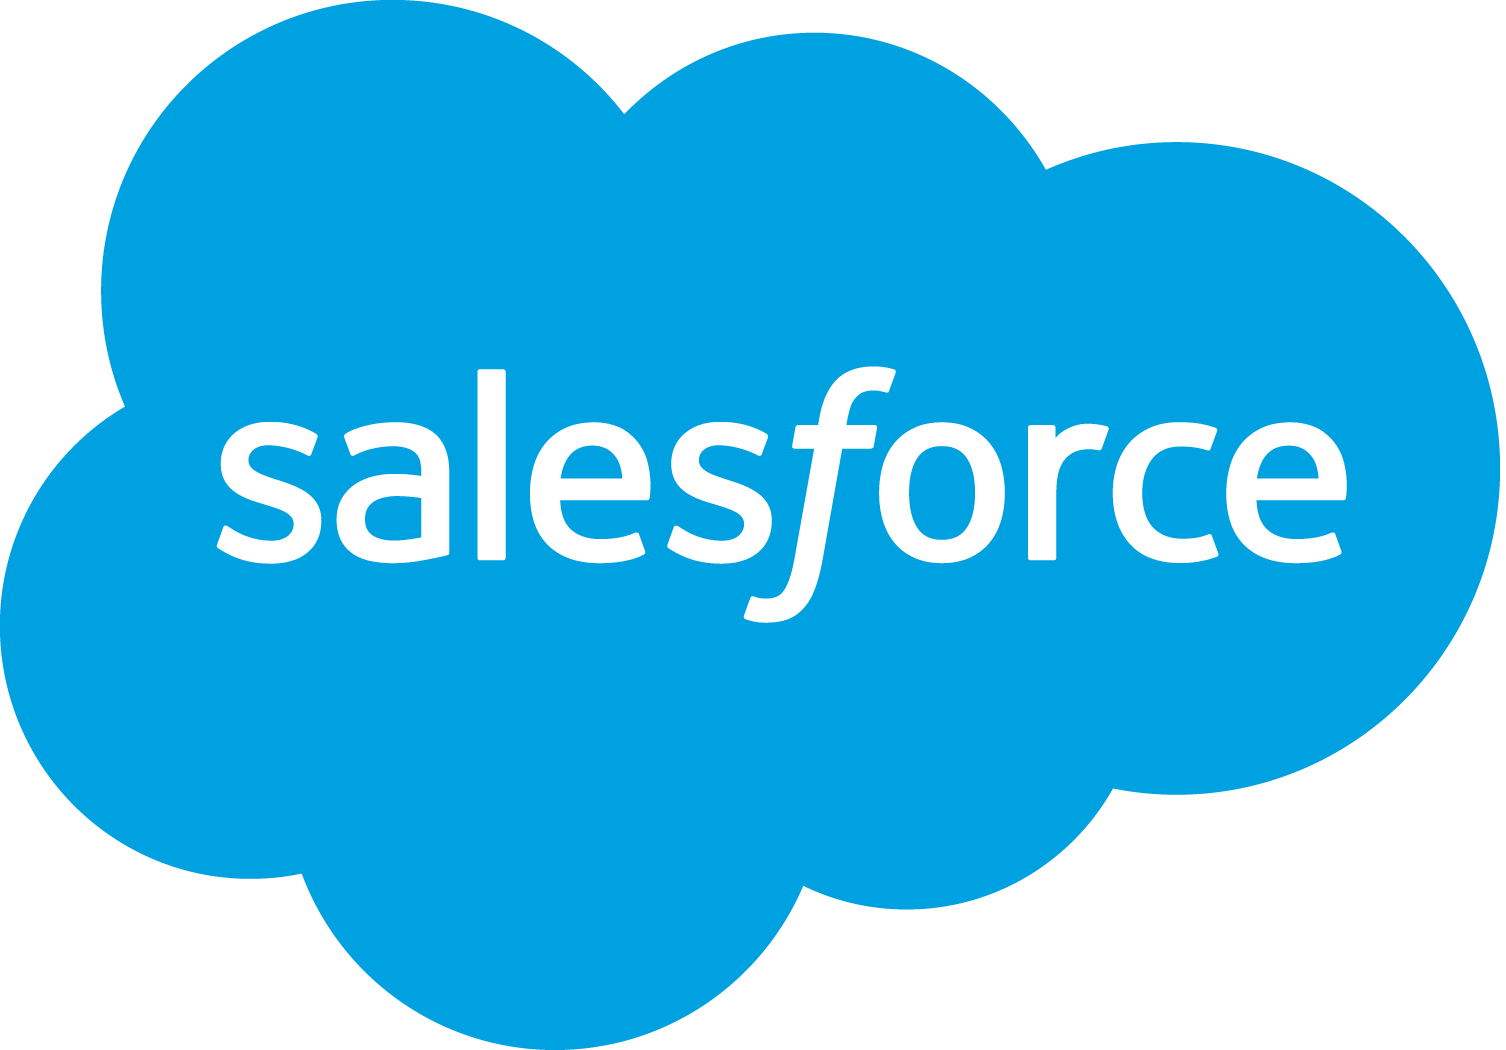 salesforce-banner-logo